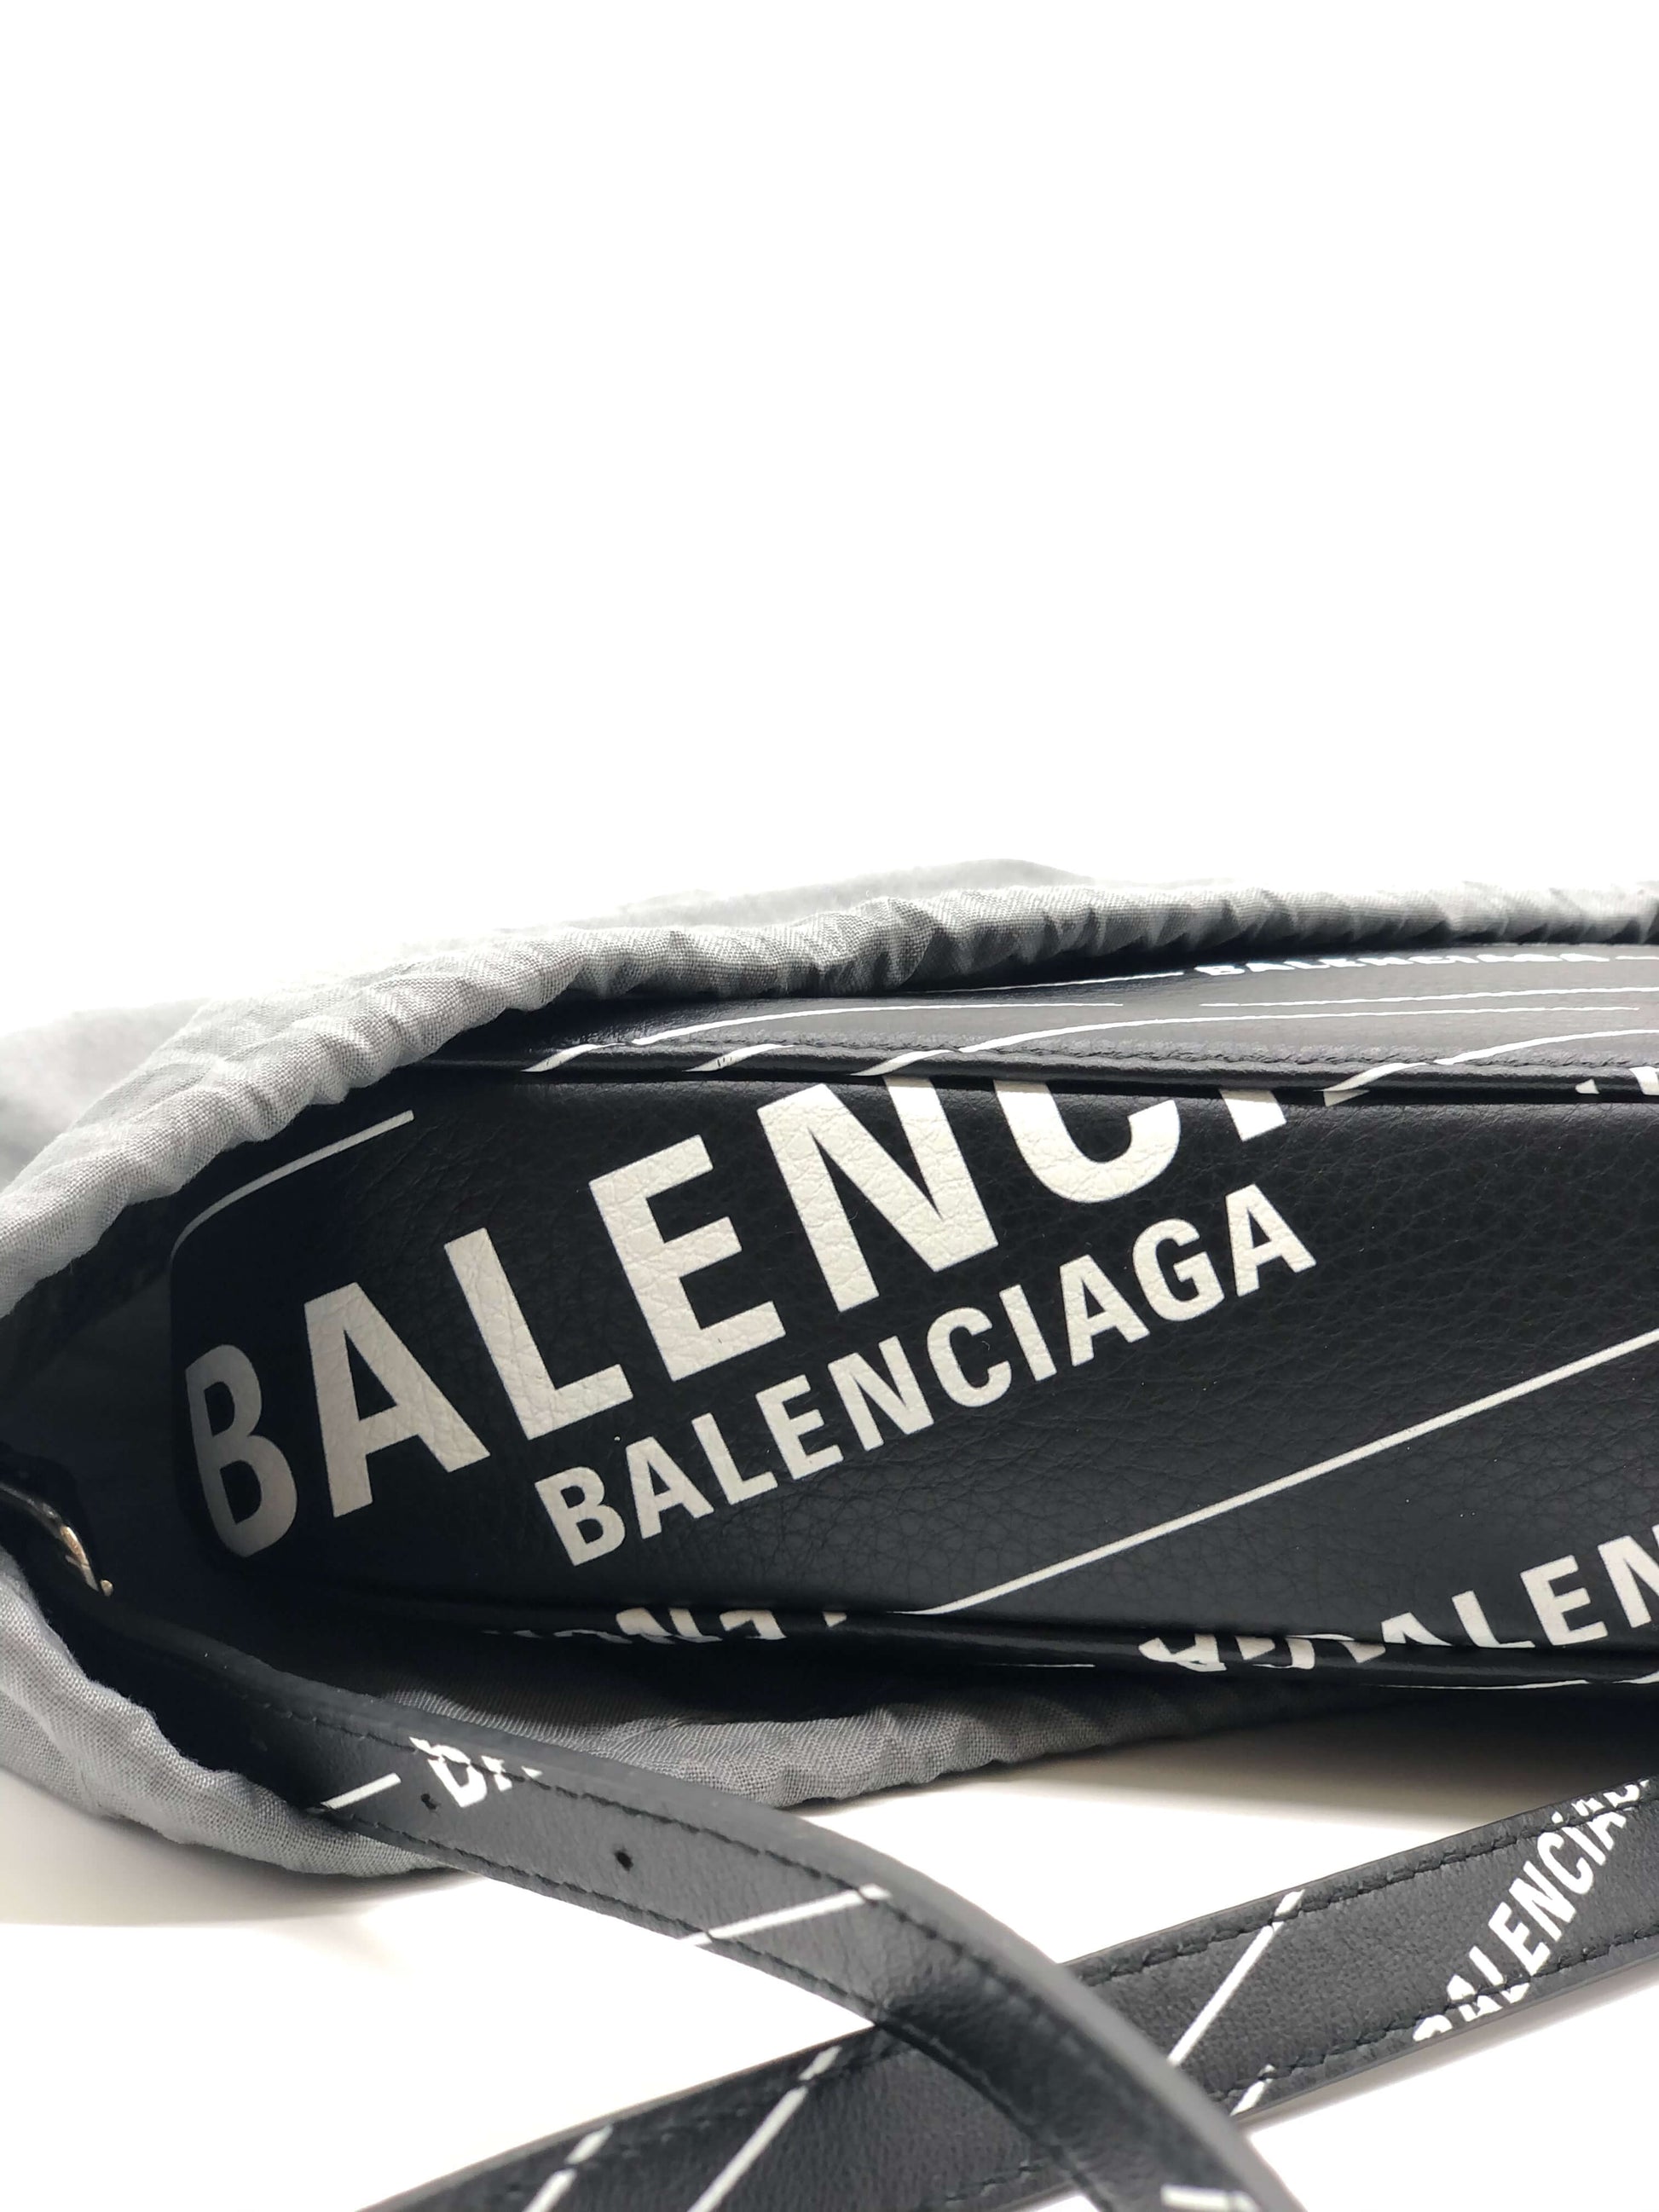 Balenciaga Black Camera Bag